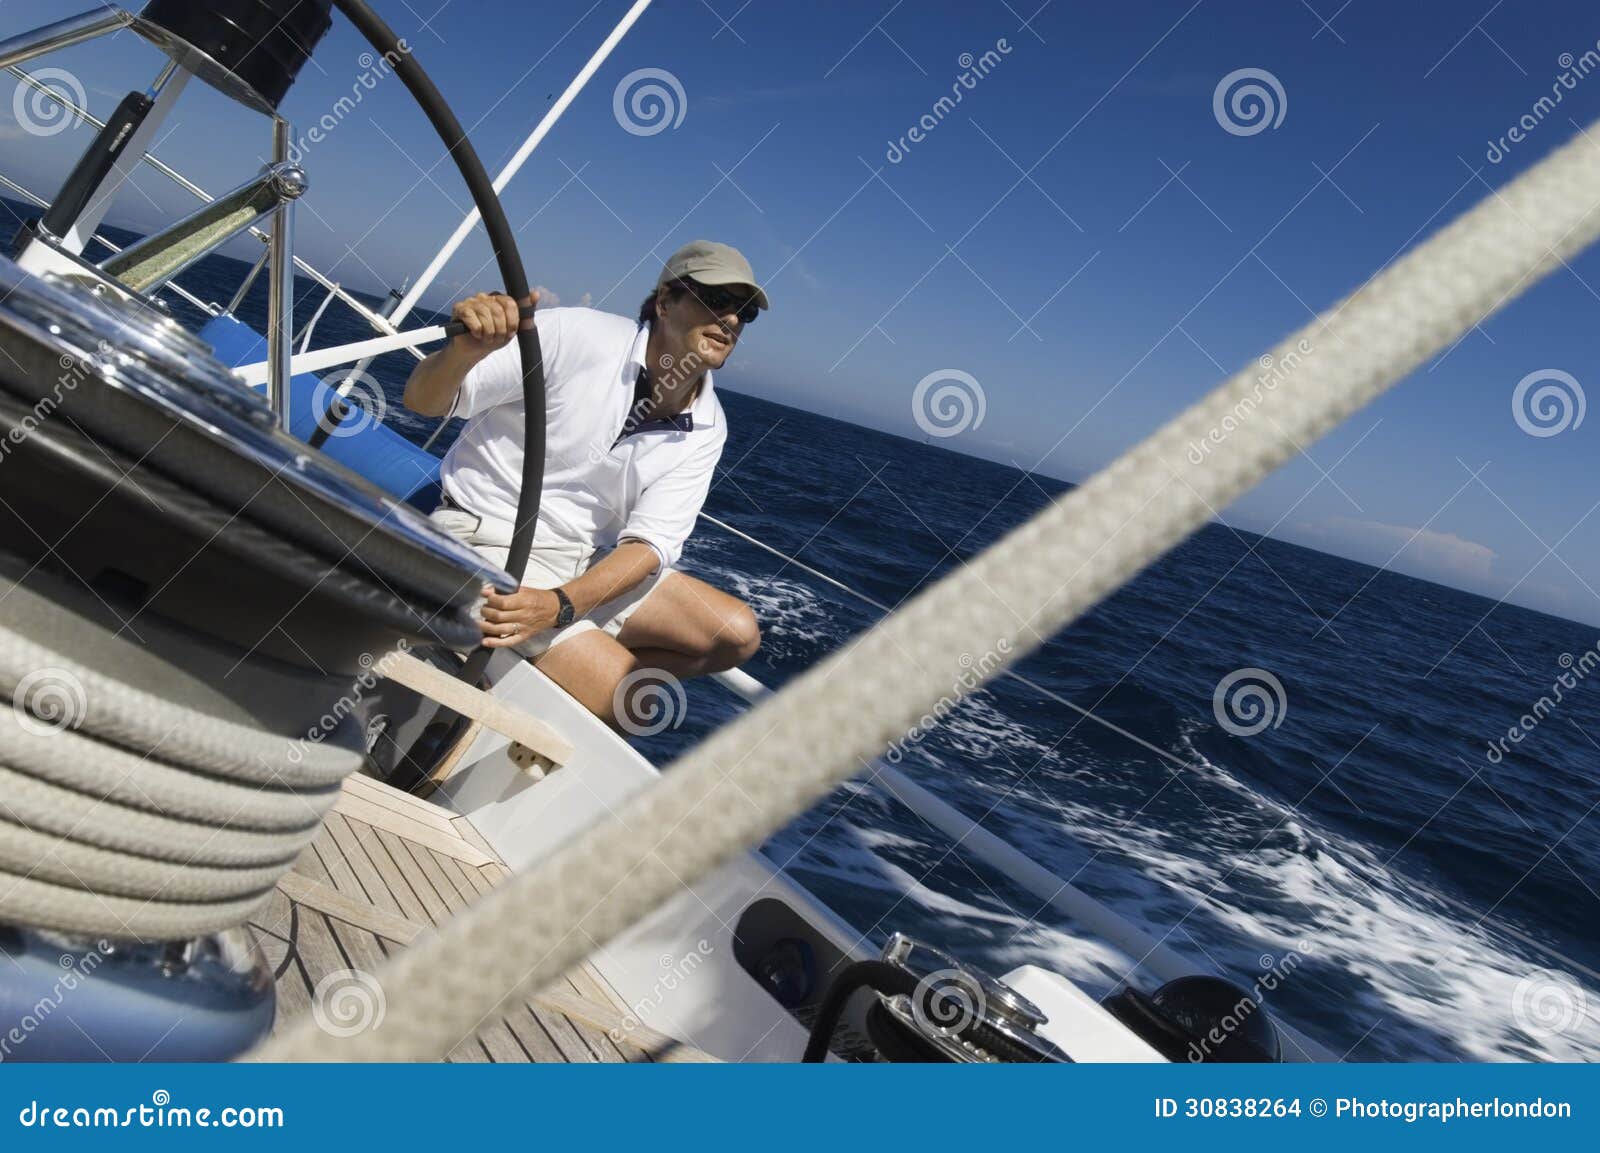 sailor at helm of sailboat